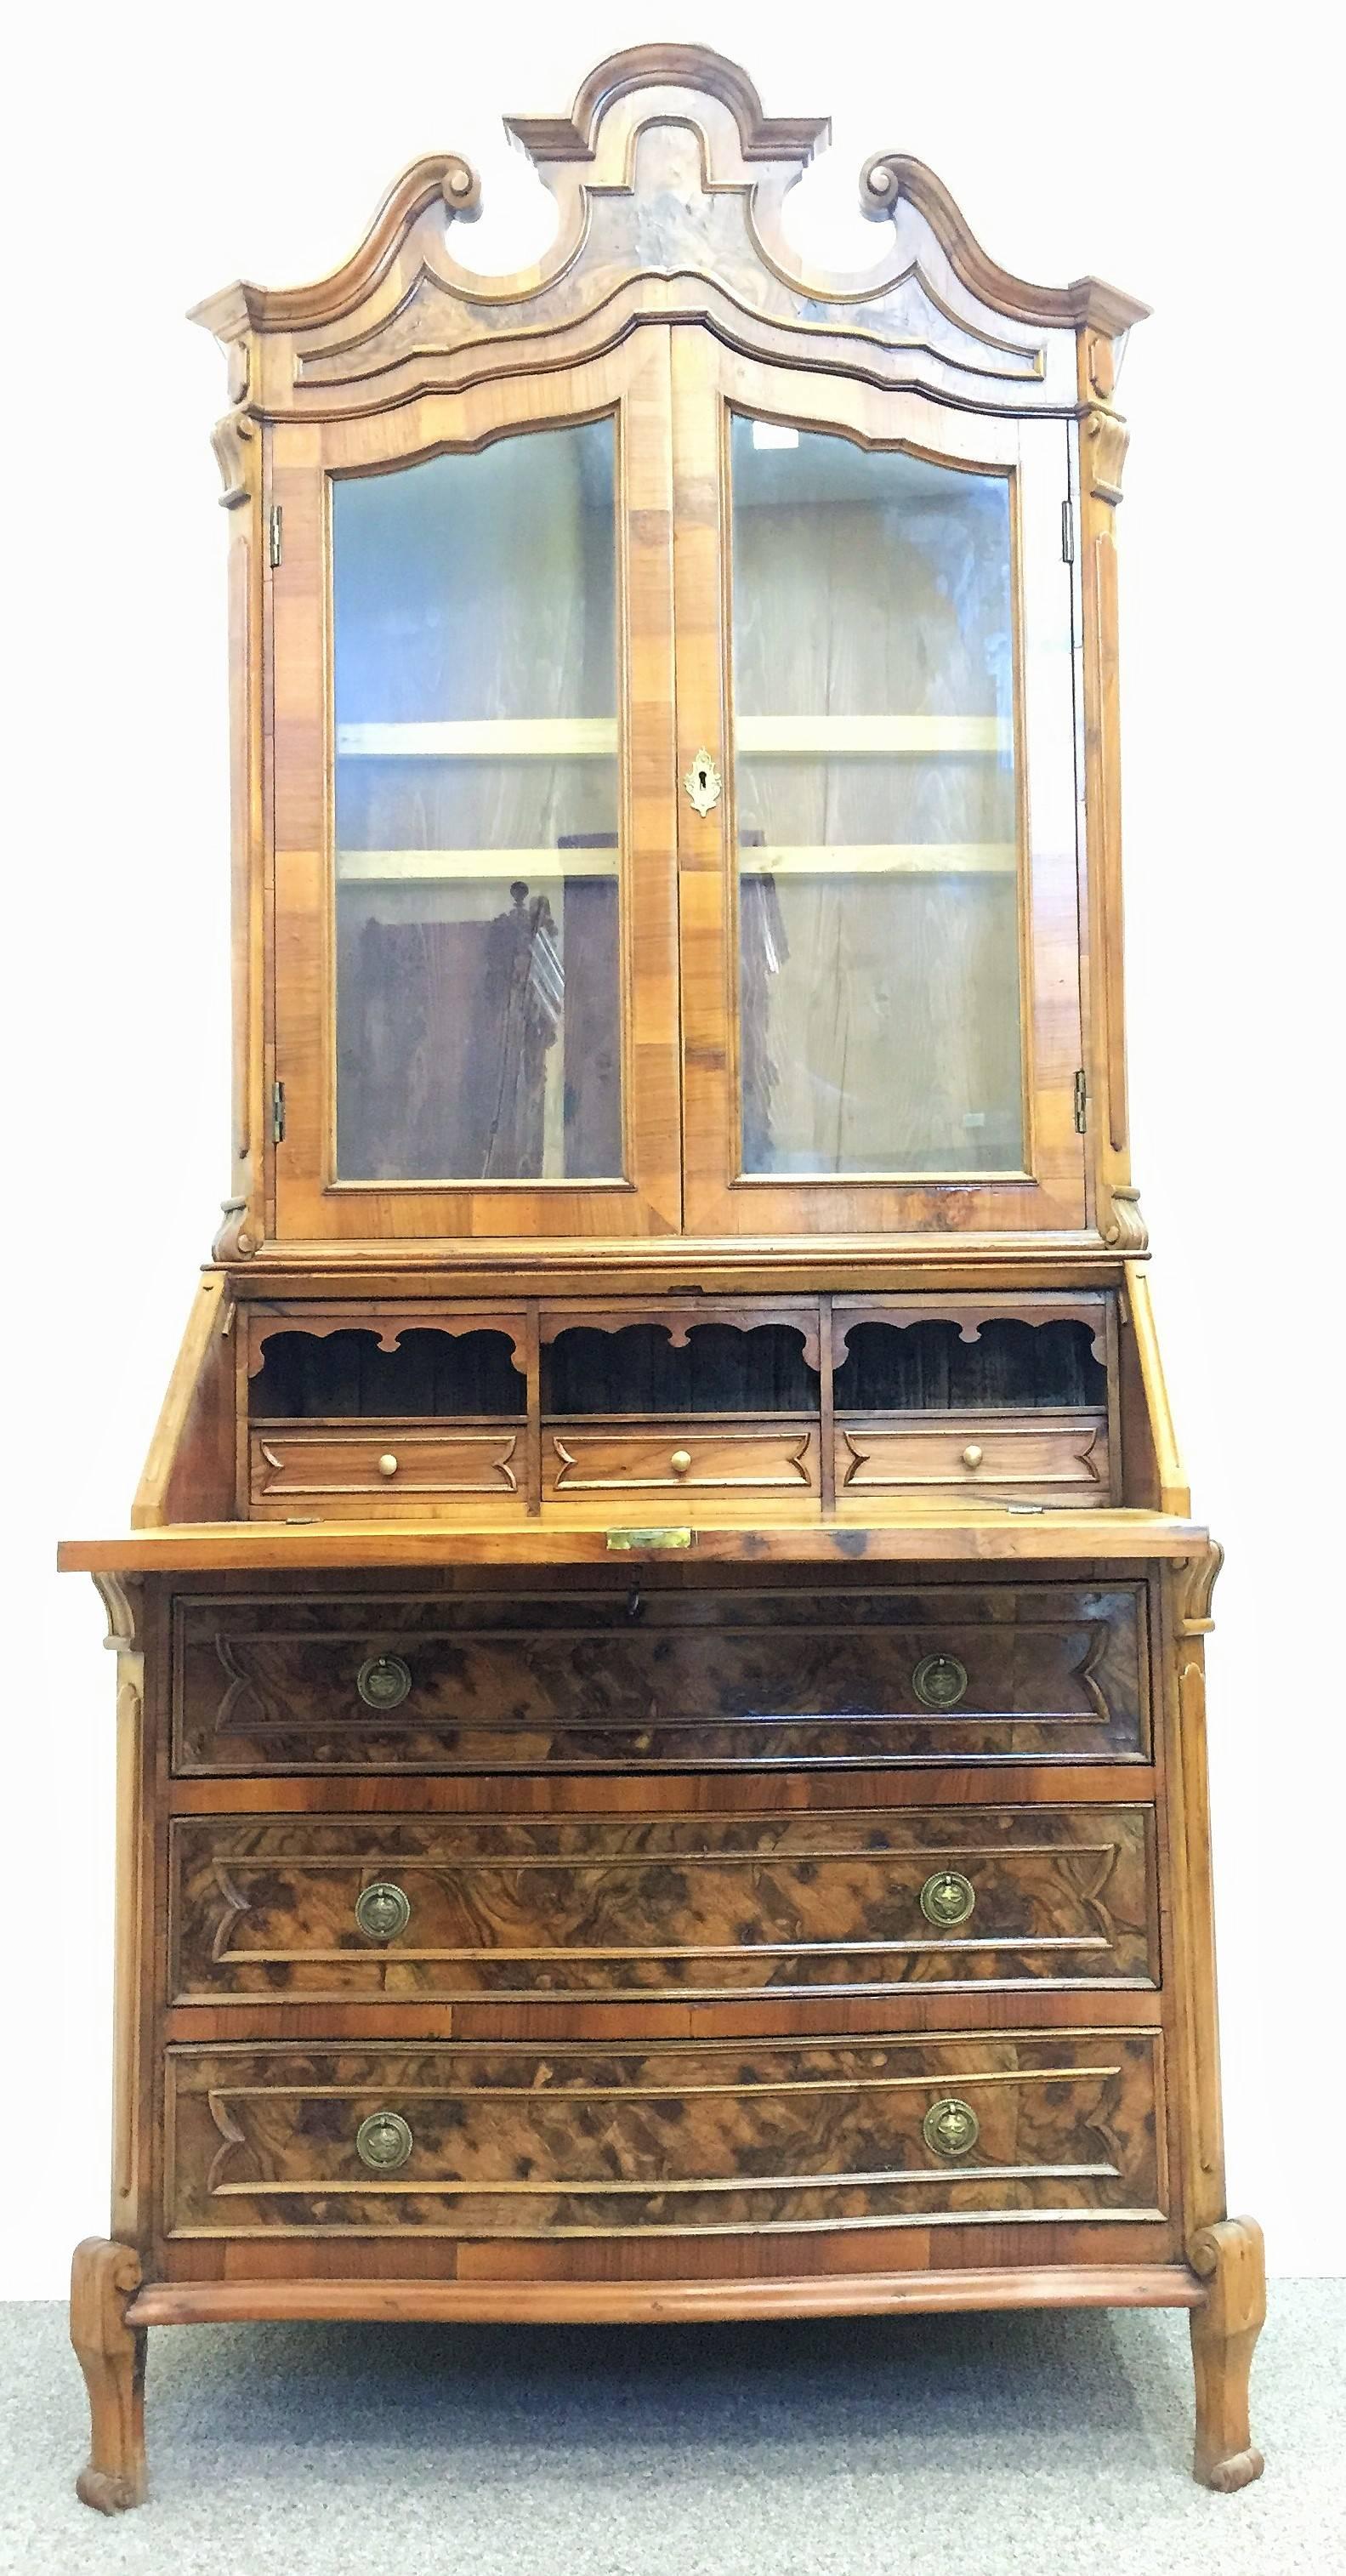 Late 18th Century English George III Mahogany Bureau Bookcase ‘Secretaire’ For Sale 1